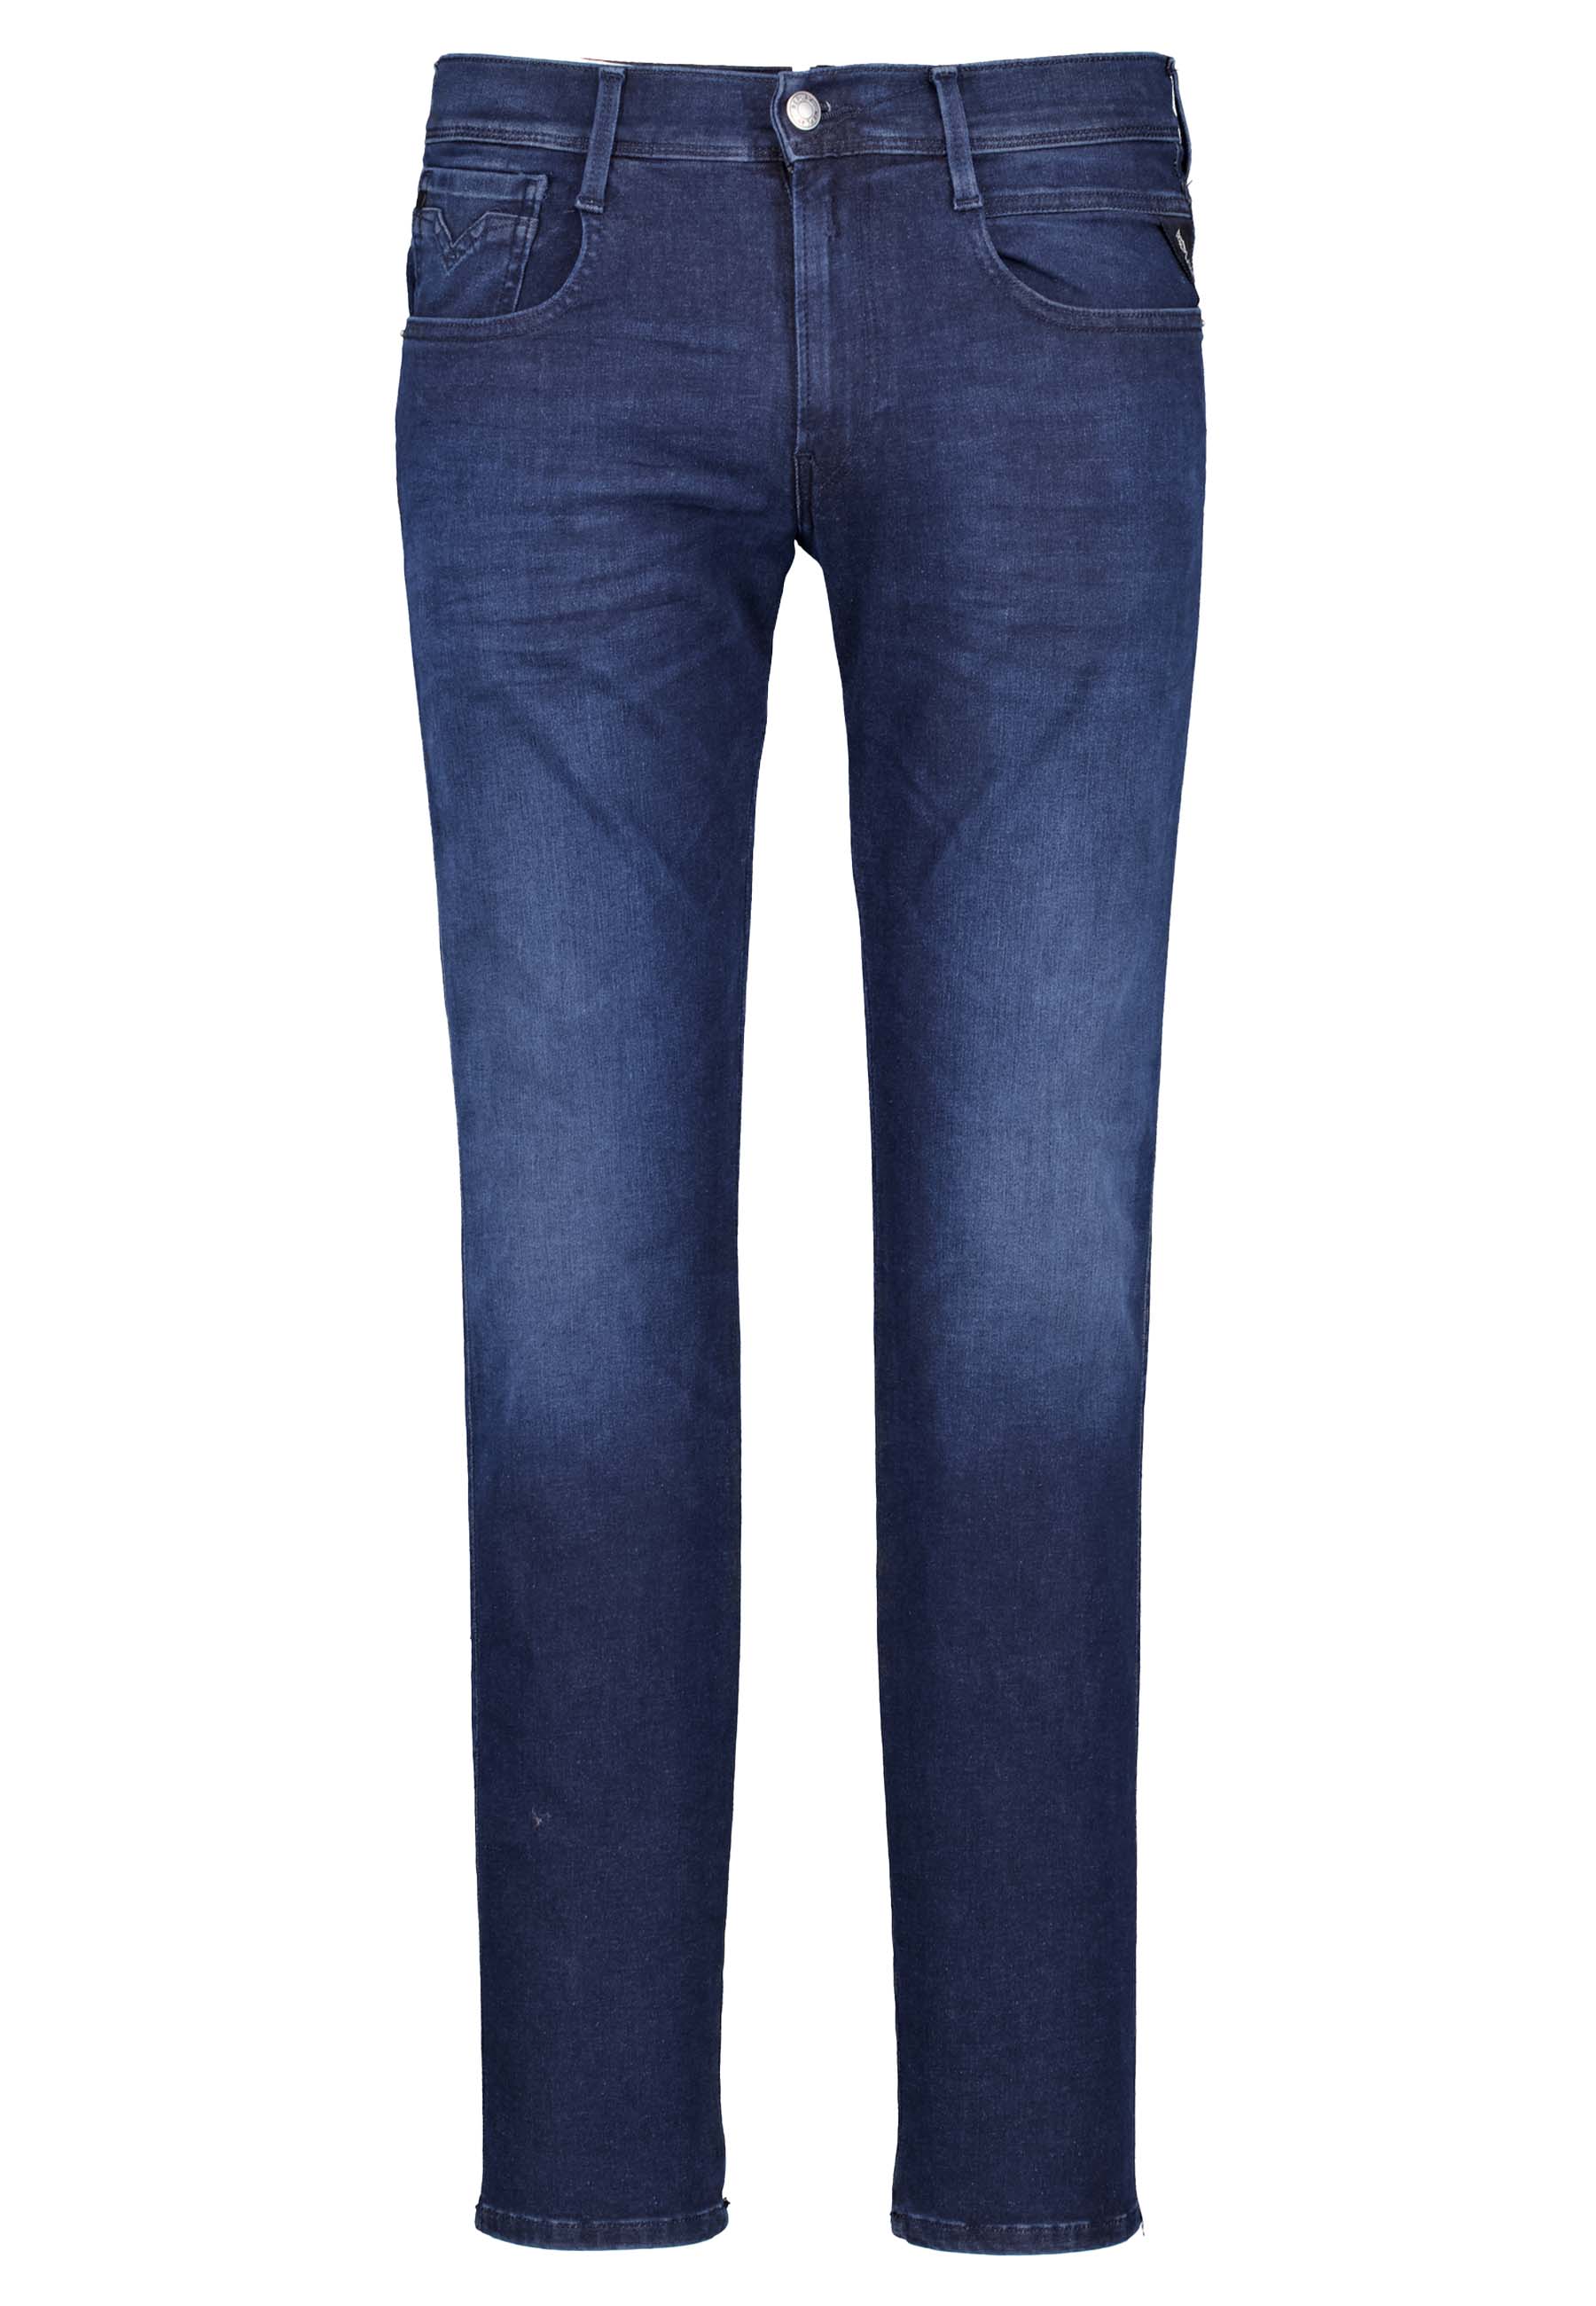 Replay jeans blauw Heren maat 31/32